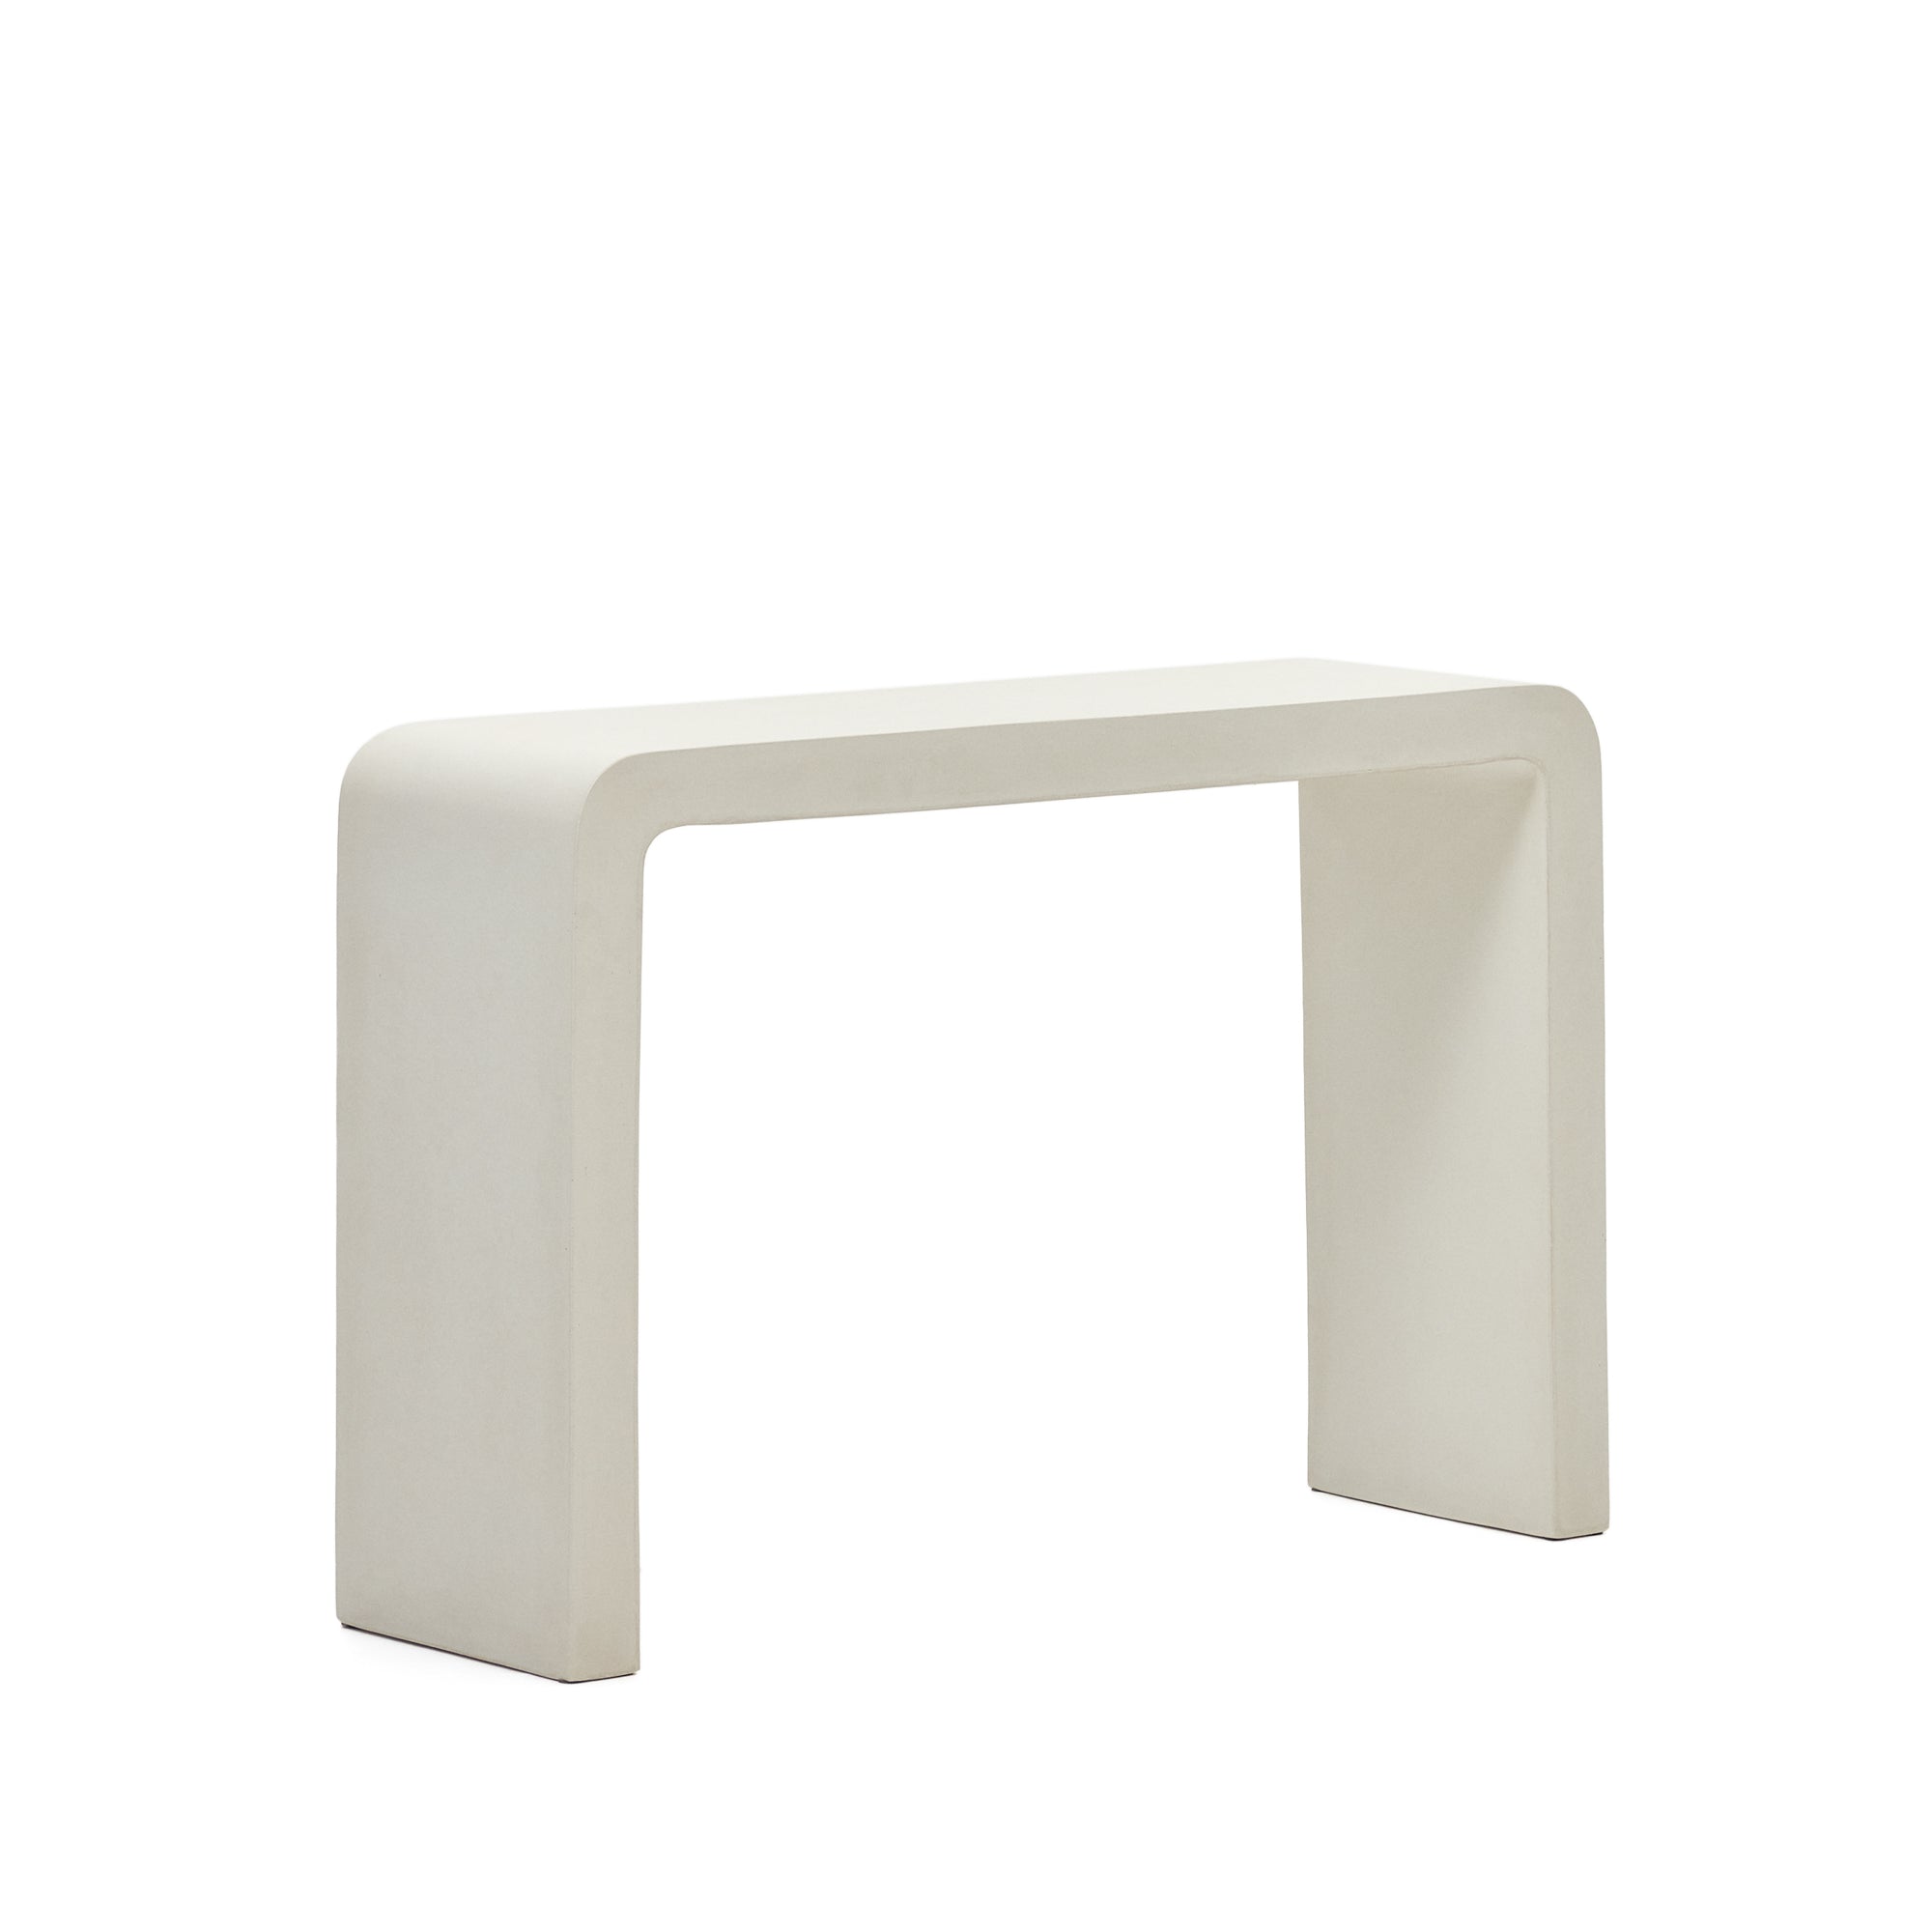 Aiguablava konzol fehér cementből, 120 x 80 cm, 120 x 80 cm